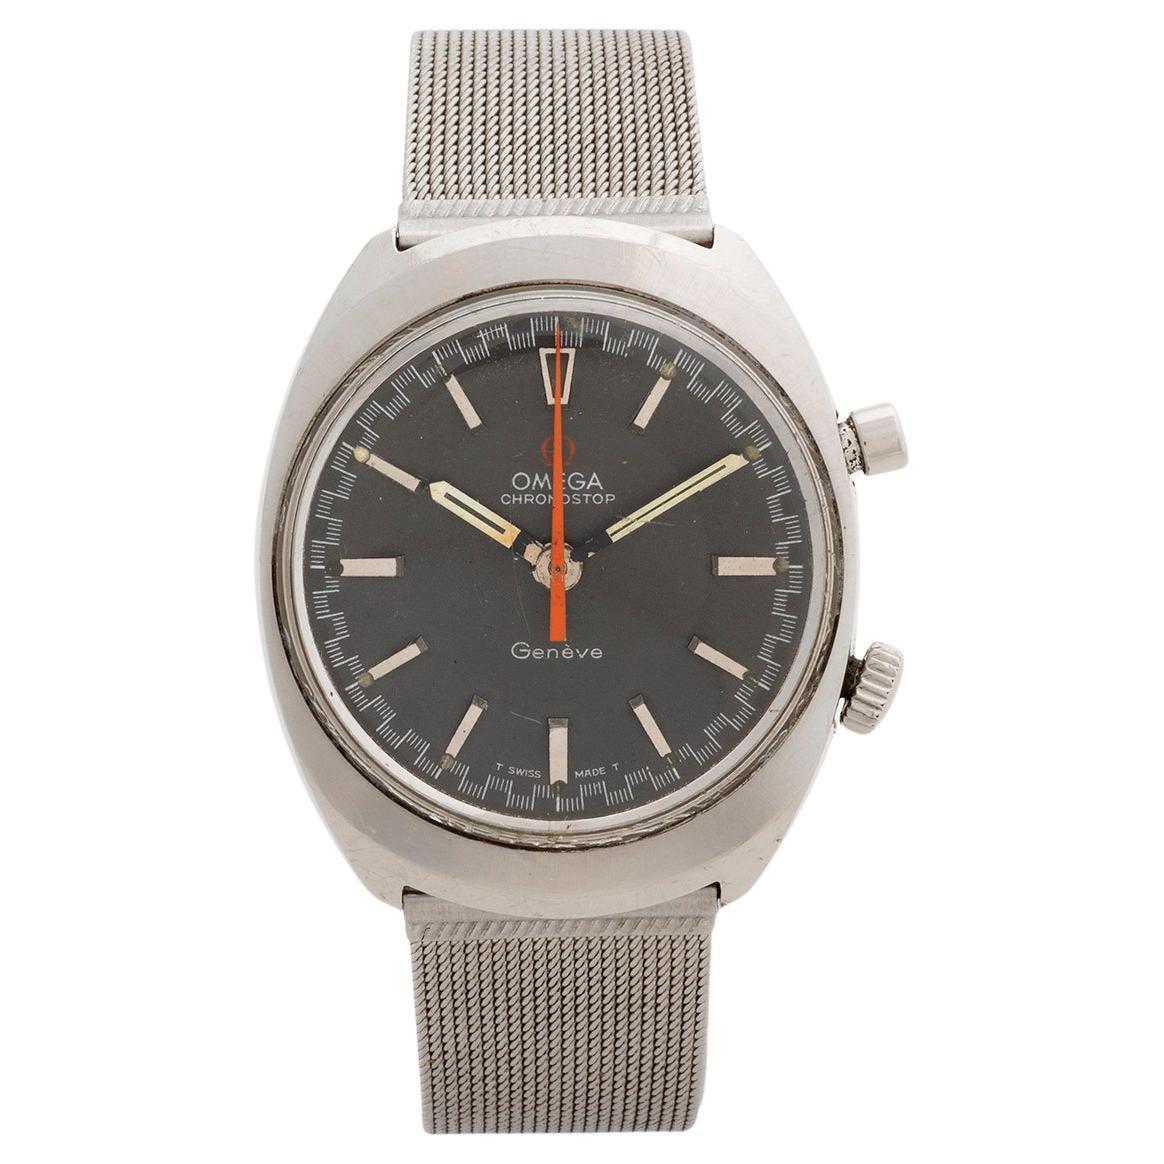 Omega Geneve Chronostop Wristwatch, Patinated Dial/Hands, Circa 1968